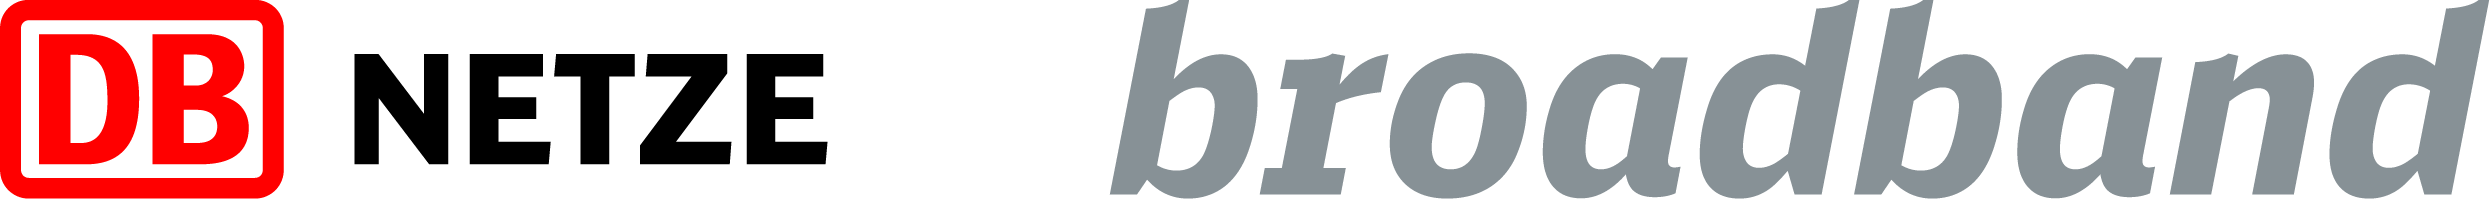 Logo DB broadband GmbH